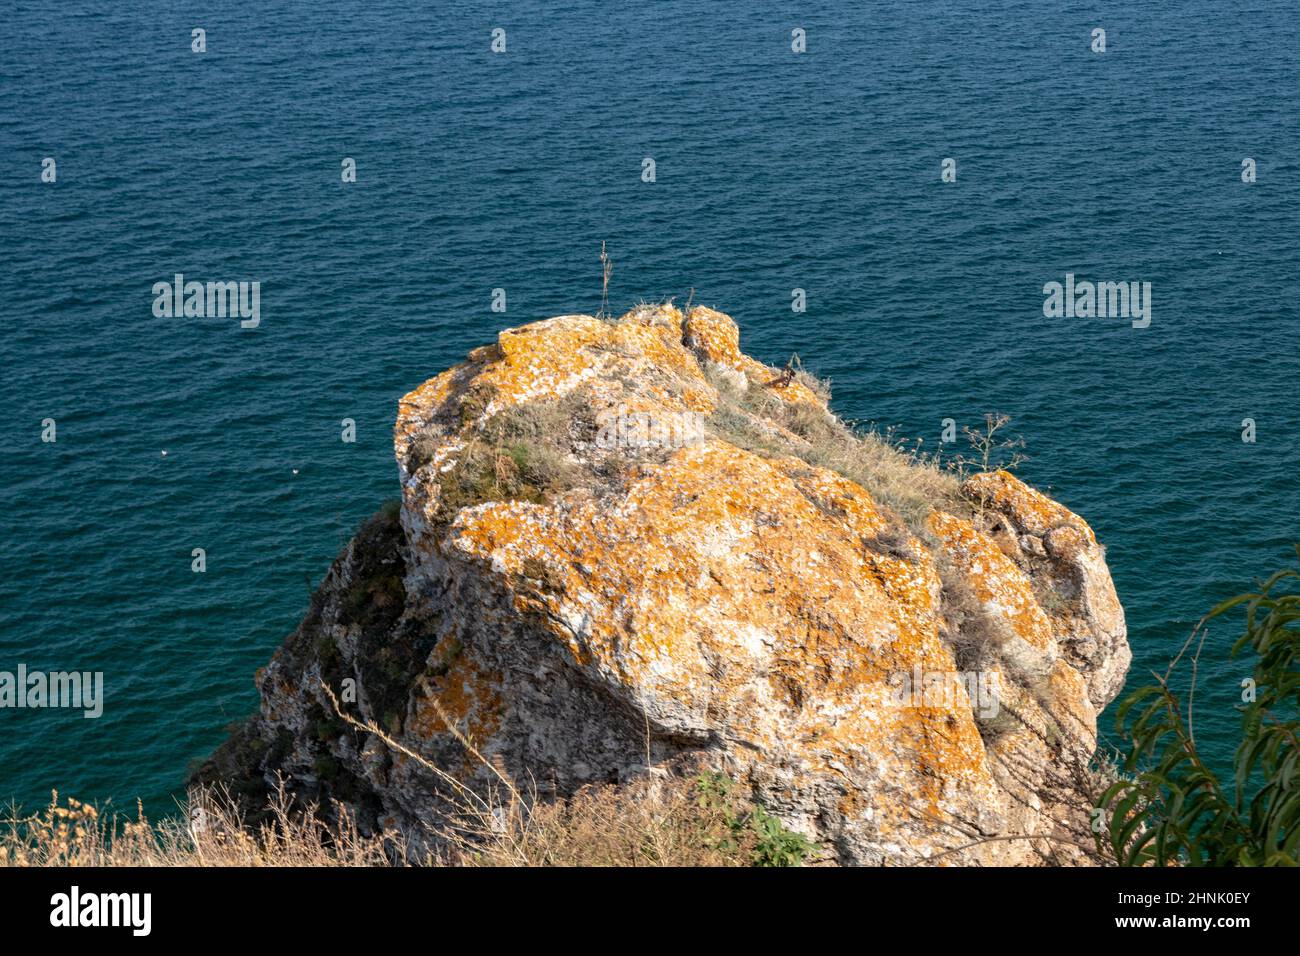 Kap Caliacra, Bulgarien - SEP 14, 2021. Kap Kaliakra - eine einzigartige architektonische und natürliche Oase stellt einen Felsvorsprung dar, der 2 Kilometer ins Meer ragt. Die steilen Klippen ragen zwischen 50 und 60 Meter vom Meer ab. Stockfoto